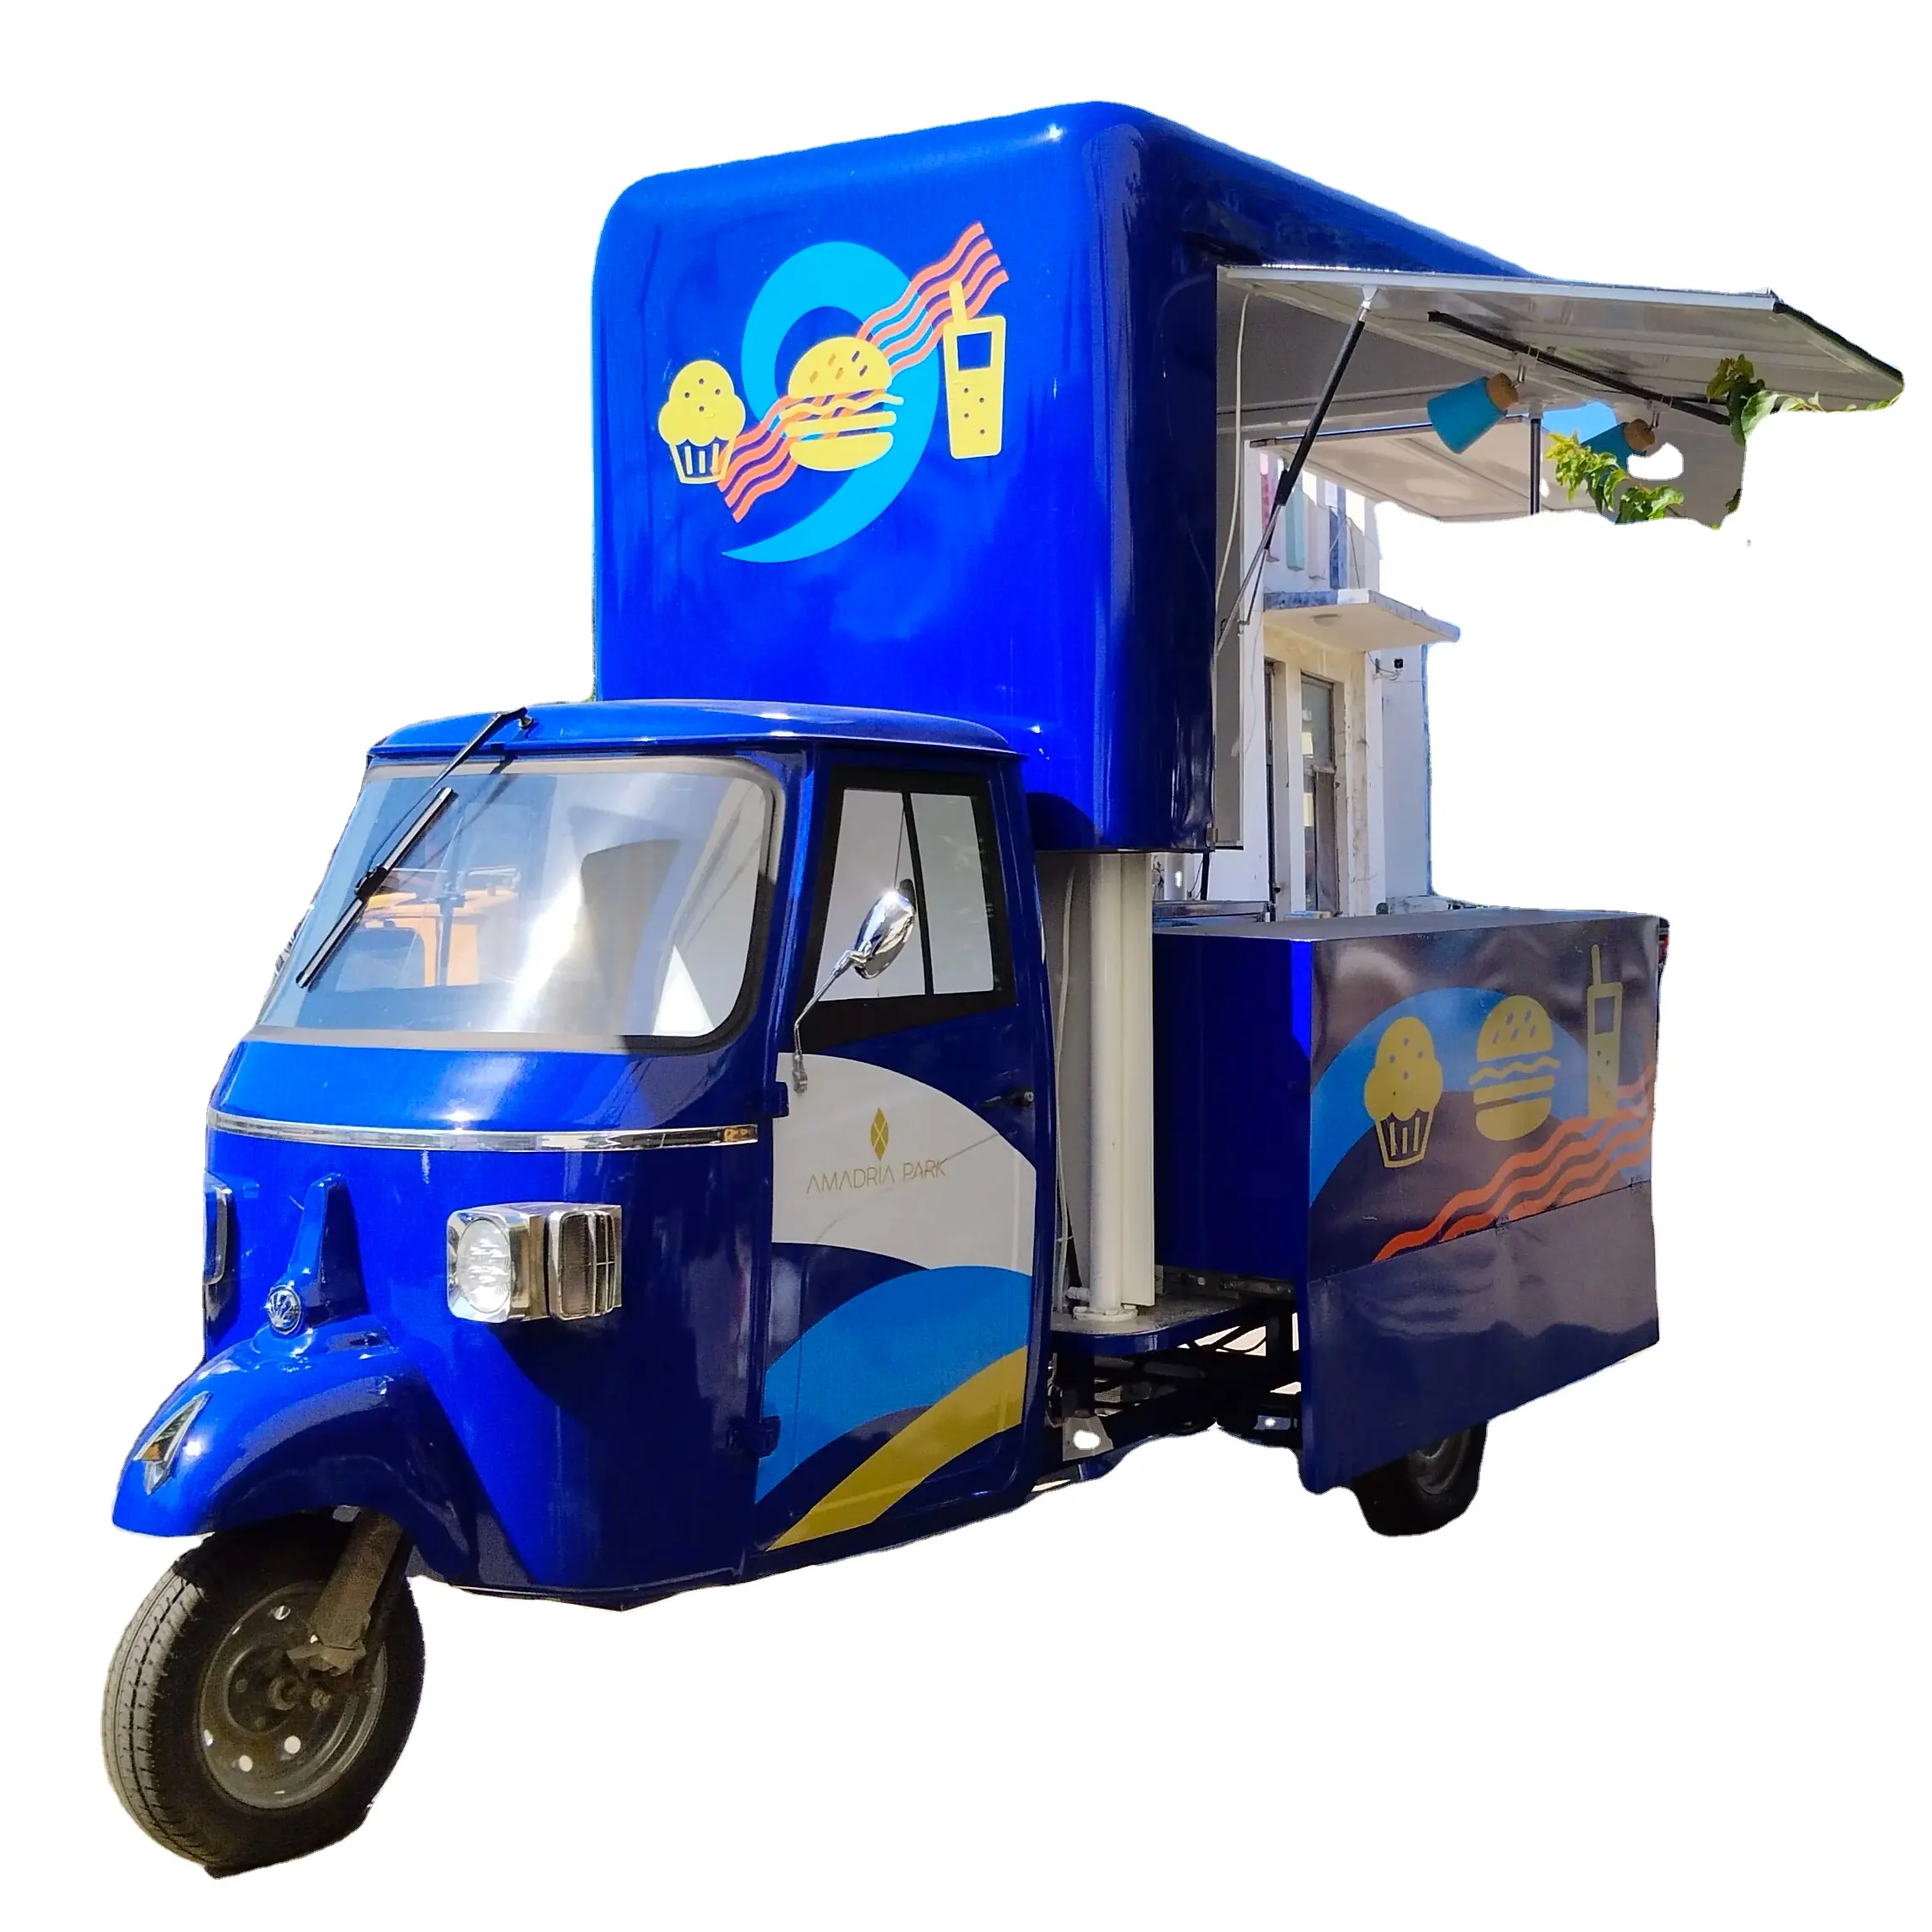 APE gelateria auto ristorazione Mobile cucina rimorchio camion cibo ristorante completamente attrezzato